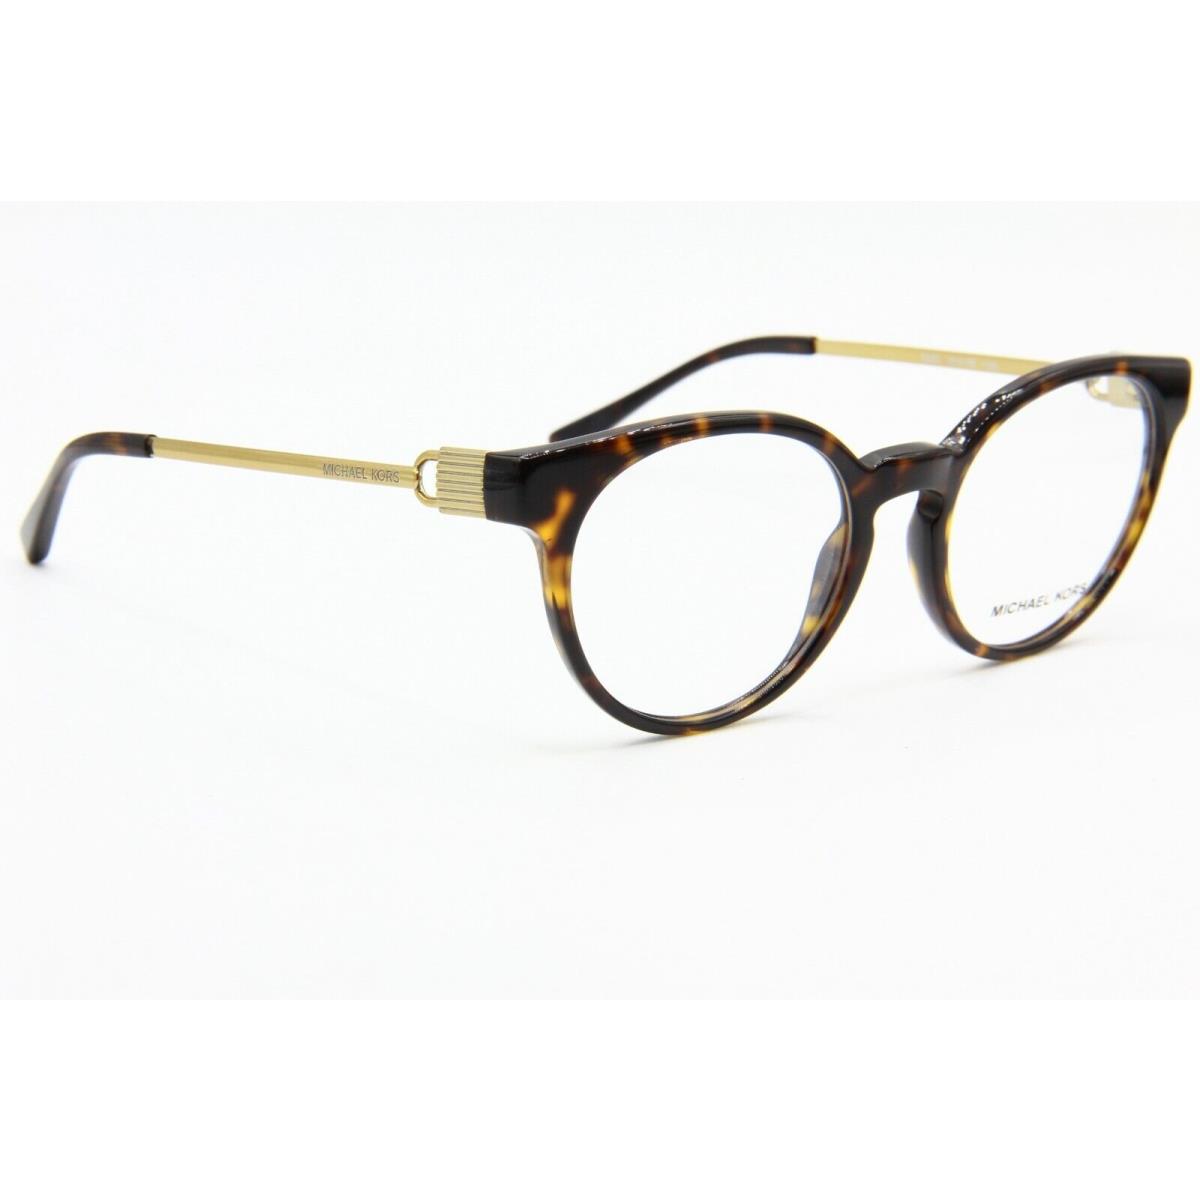 Michael Kors eyeglasses  - HAVANA Frame 1